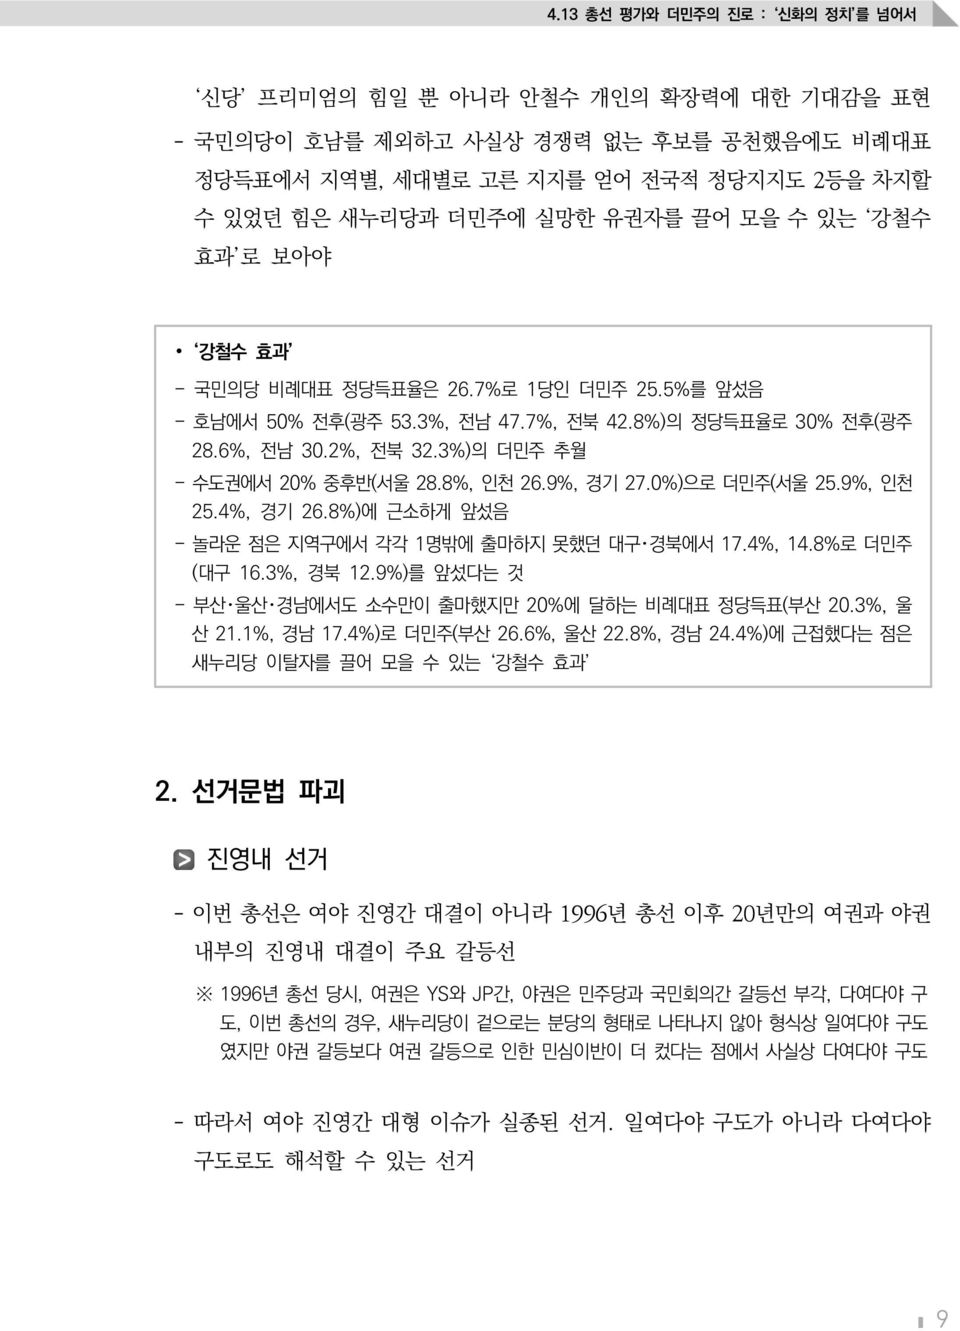 8%, 인천 26.9%, 경기 27.0%)으로 더민주(서울 25.9%, 인천 25.4%, 경기 26.8%)에 근소하게 앞섰음 - 놀라운 점은 지역구에서 각각 1명밖에 출마하지 못했던 대구 경북에서 17.4%, 14.8%로 더민주 (대구 16.3%, 경북 12.